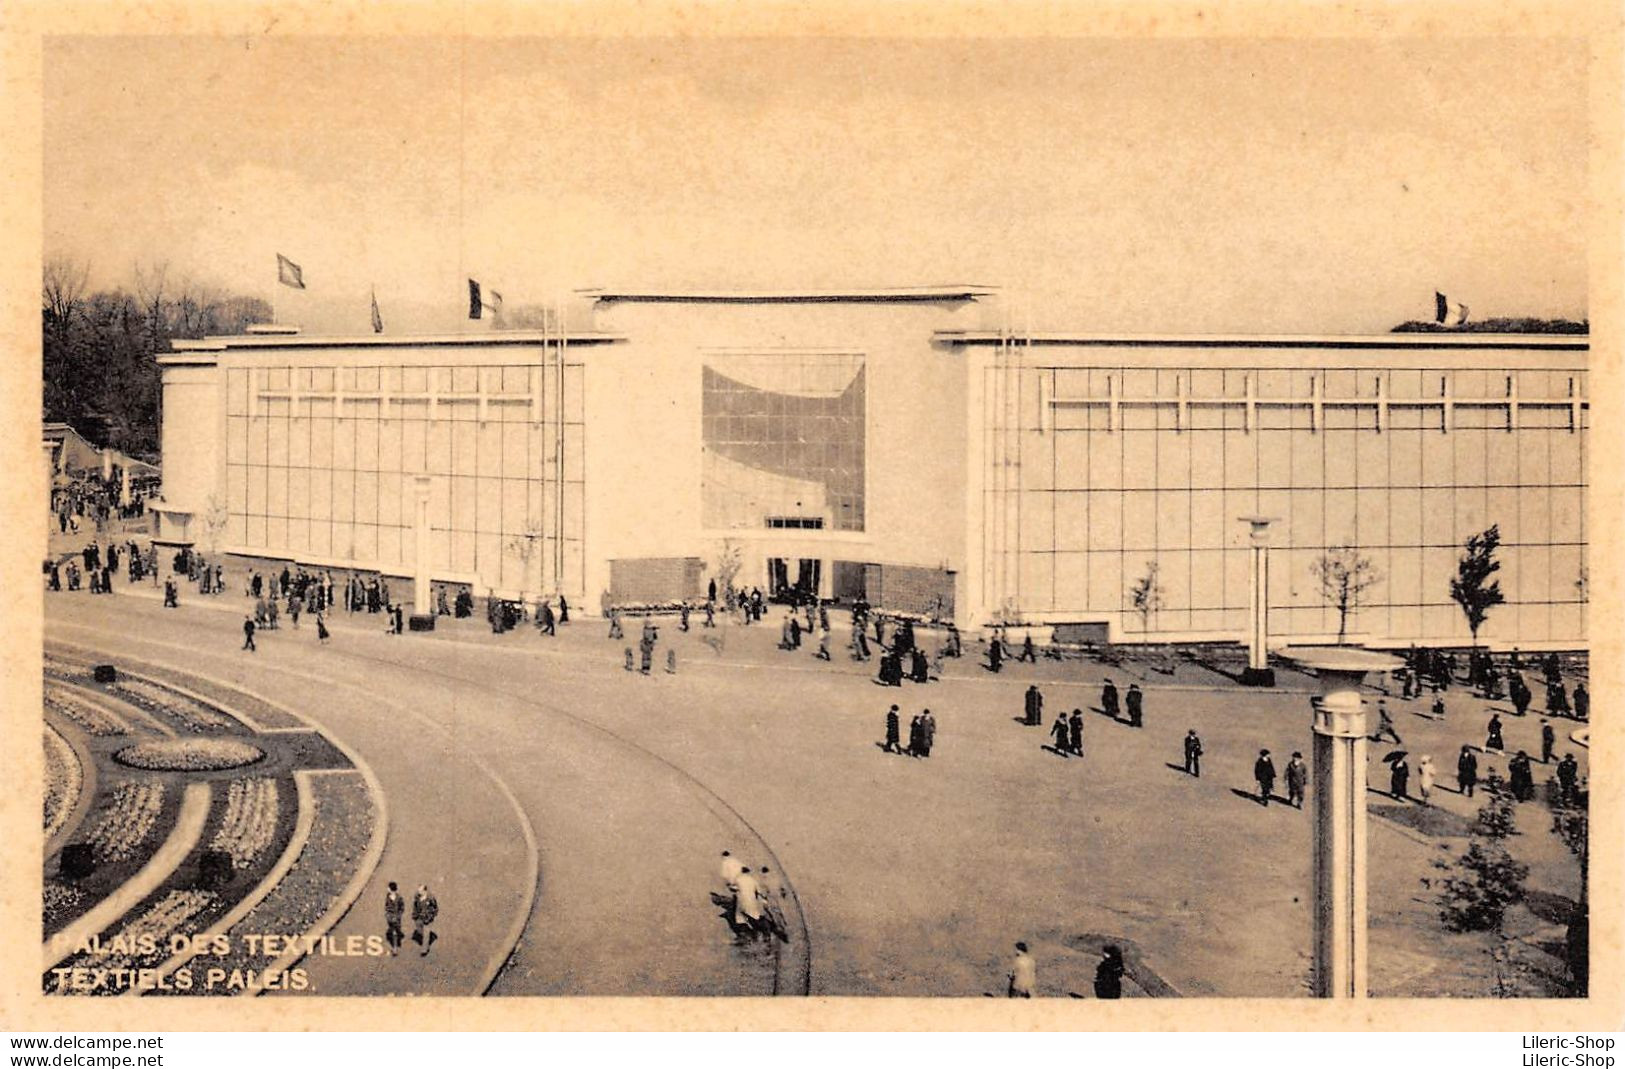 Exposition Universelle 1935 - PALAIS DES TEXTILES / TEXTIELS PALEIS - Universal Exhibitions